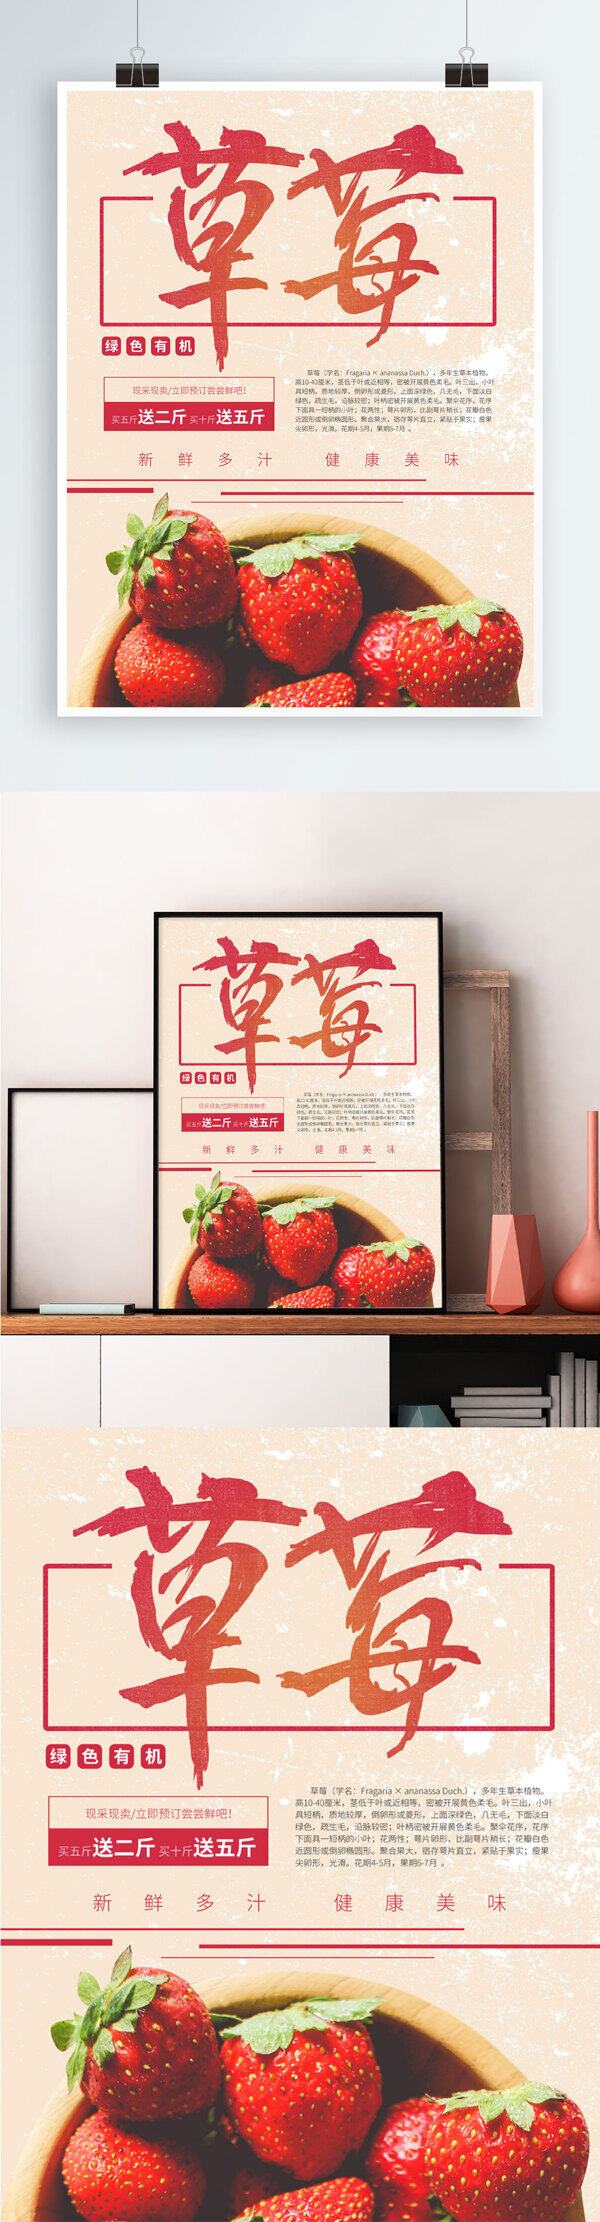 简约草莓新鲜水果海报设计PSD模板